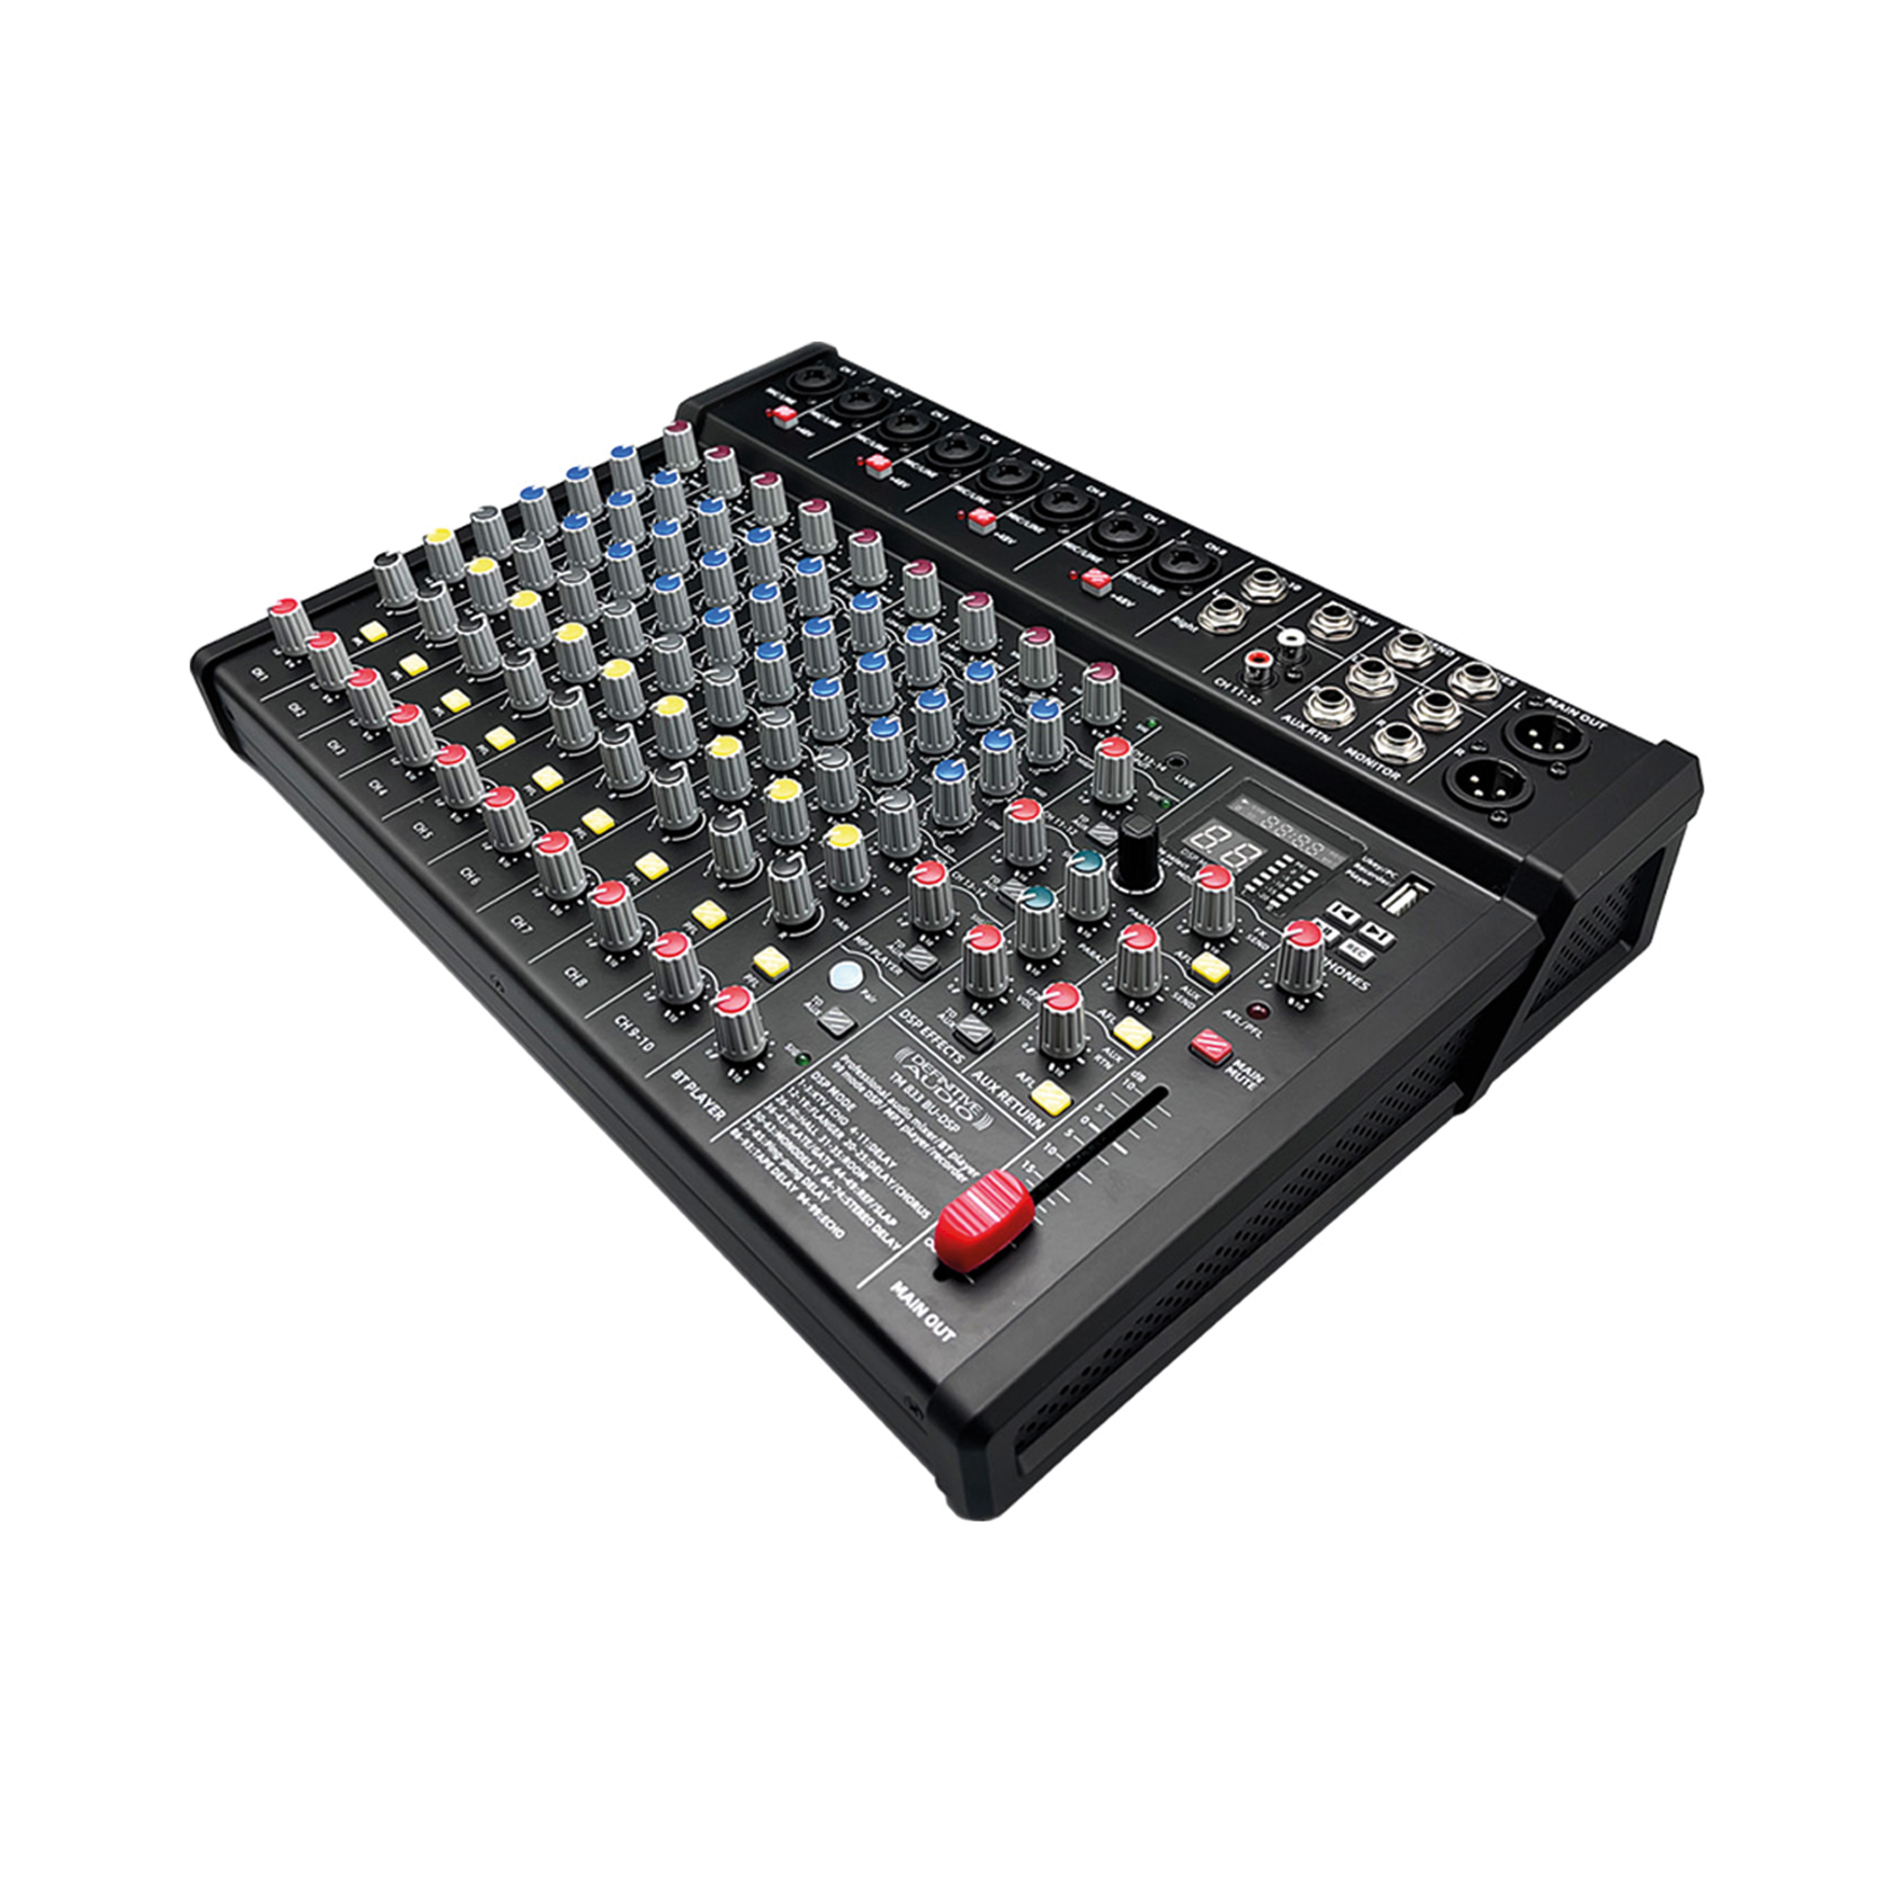 Definitive Audio Tm 833 Bu-dsp - Table De Mixage Analogique - Variation 1